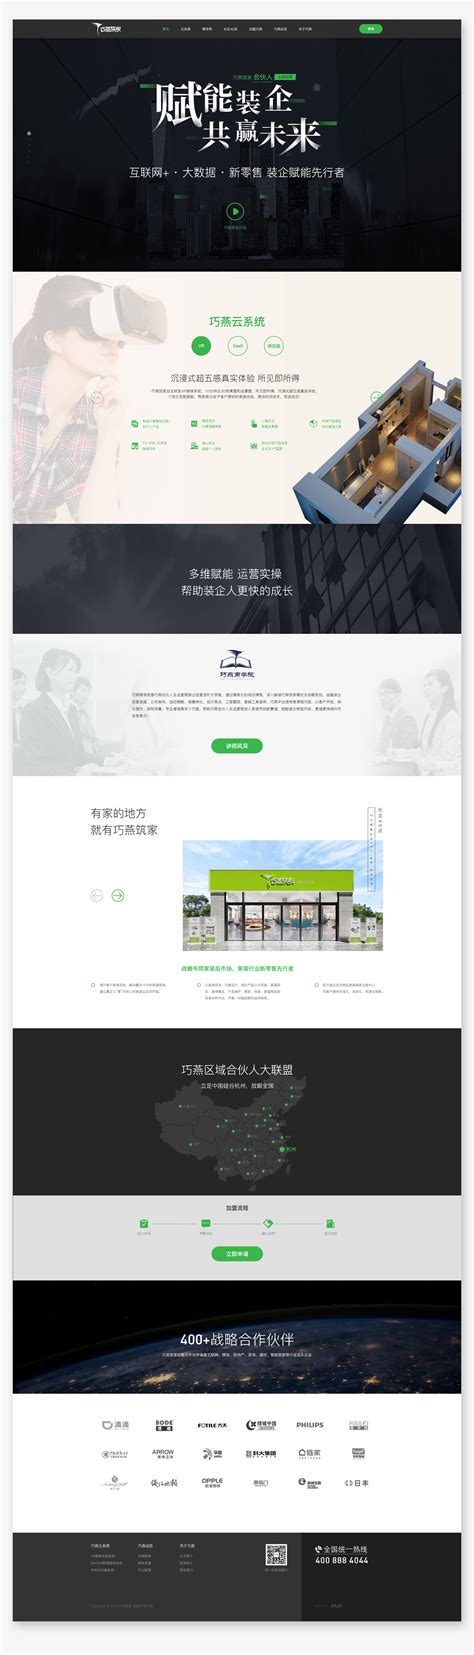 杭州互联网公司网站建设案例 - 派迪科技